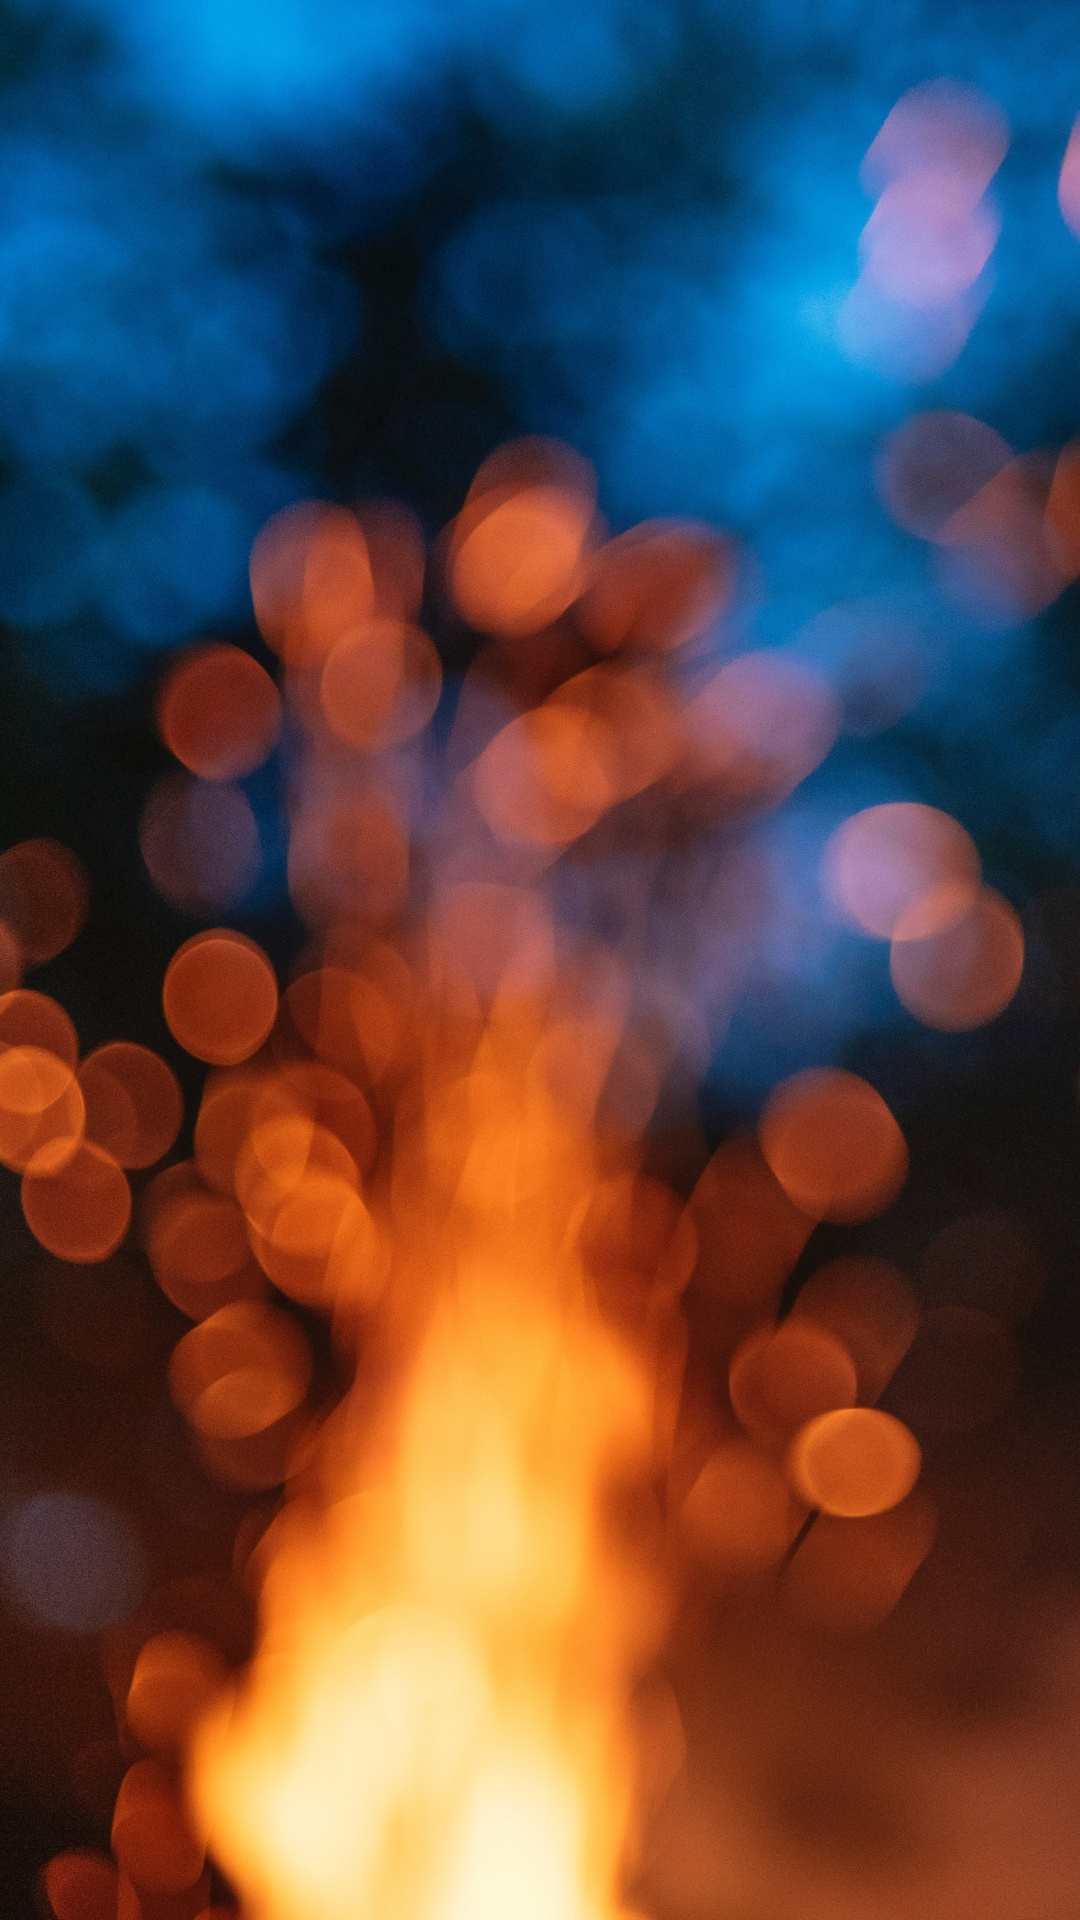 光, 热, 火焰, 天空, 篝火 壁纸 1080x1920 允许